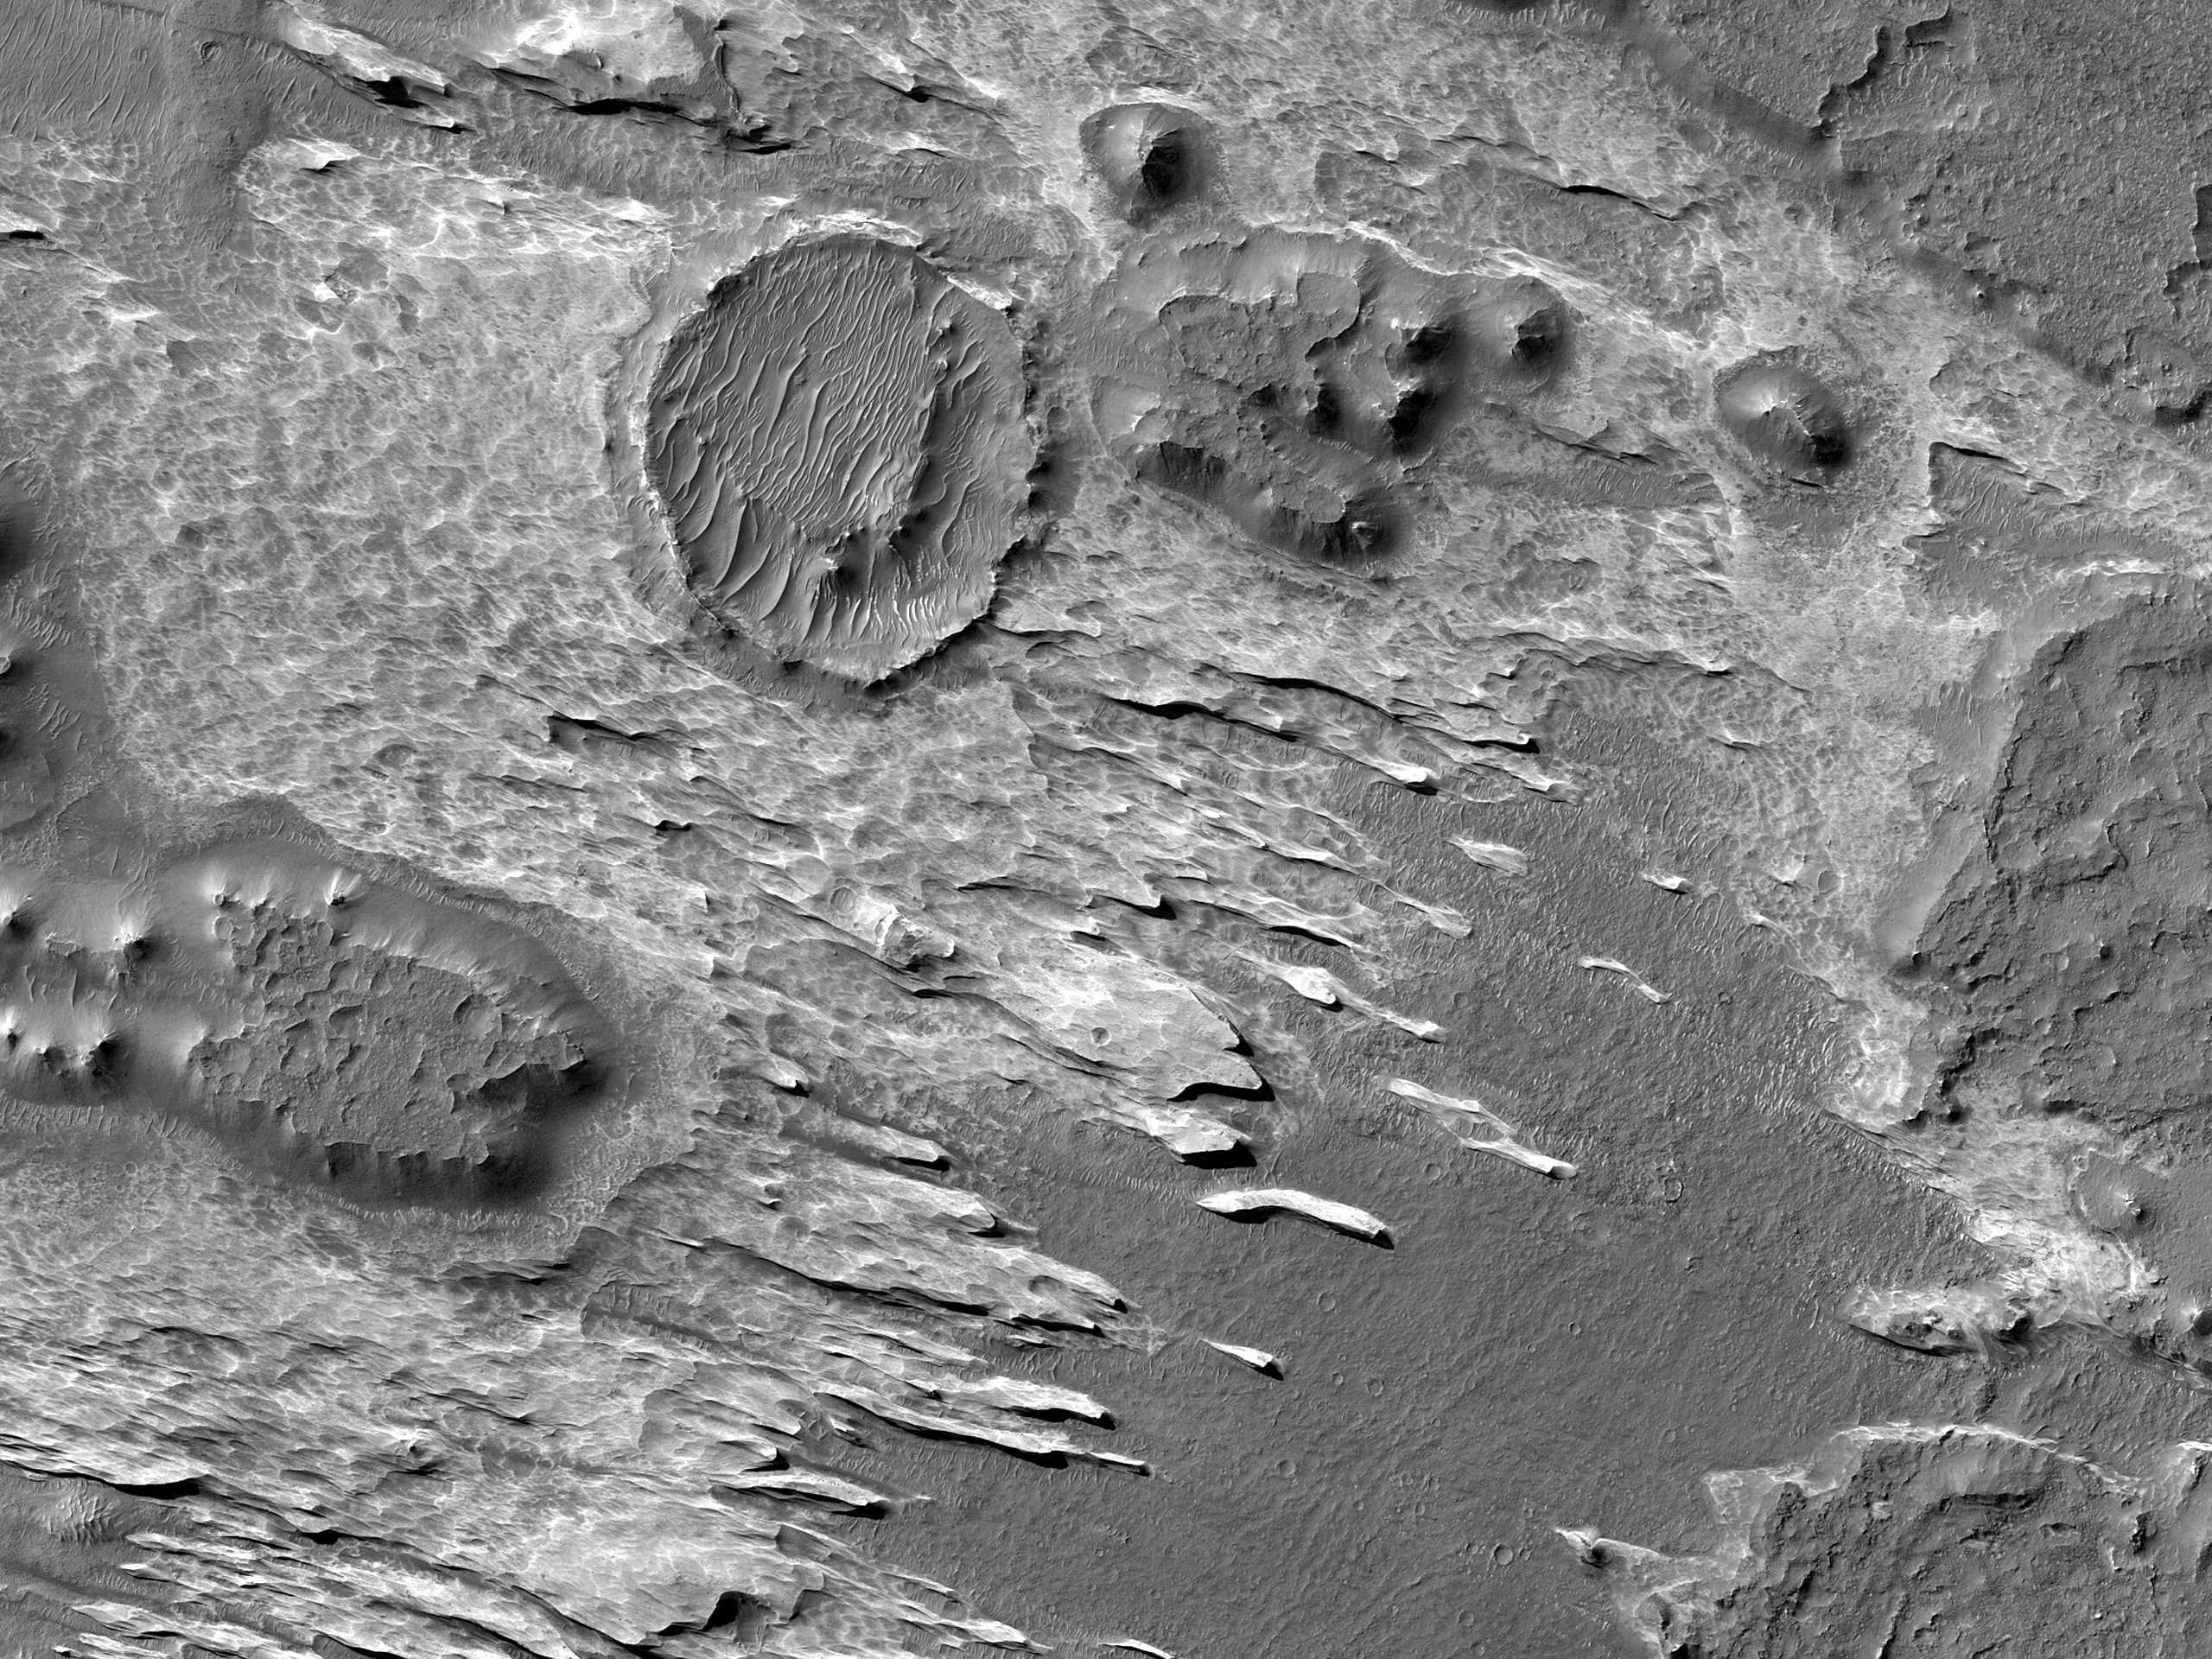 תצורה מעגלית וגבעות קטנות על הרצפה של קניון מלאס קזמה (Melas Chasma)